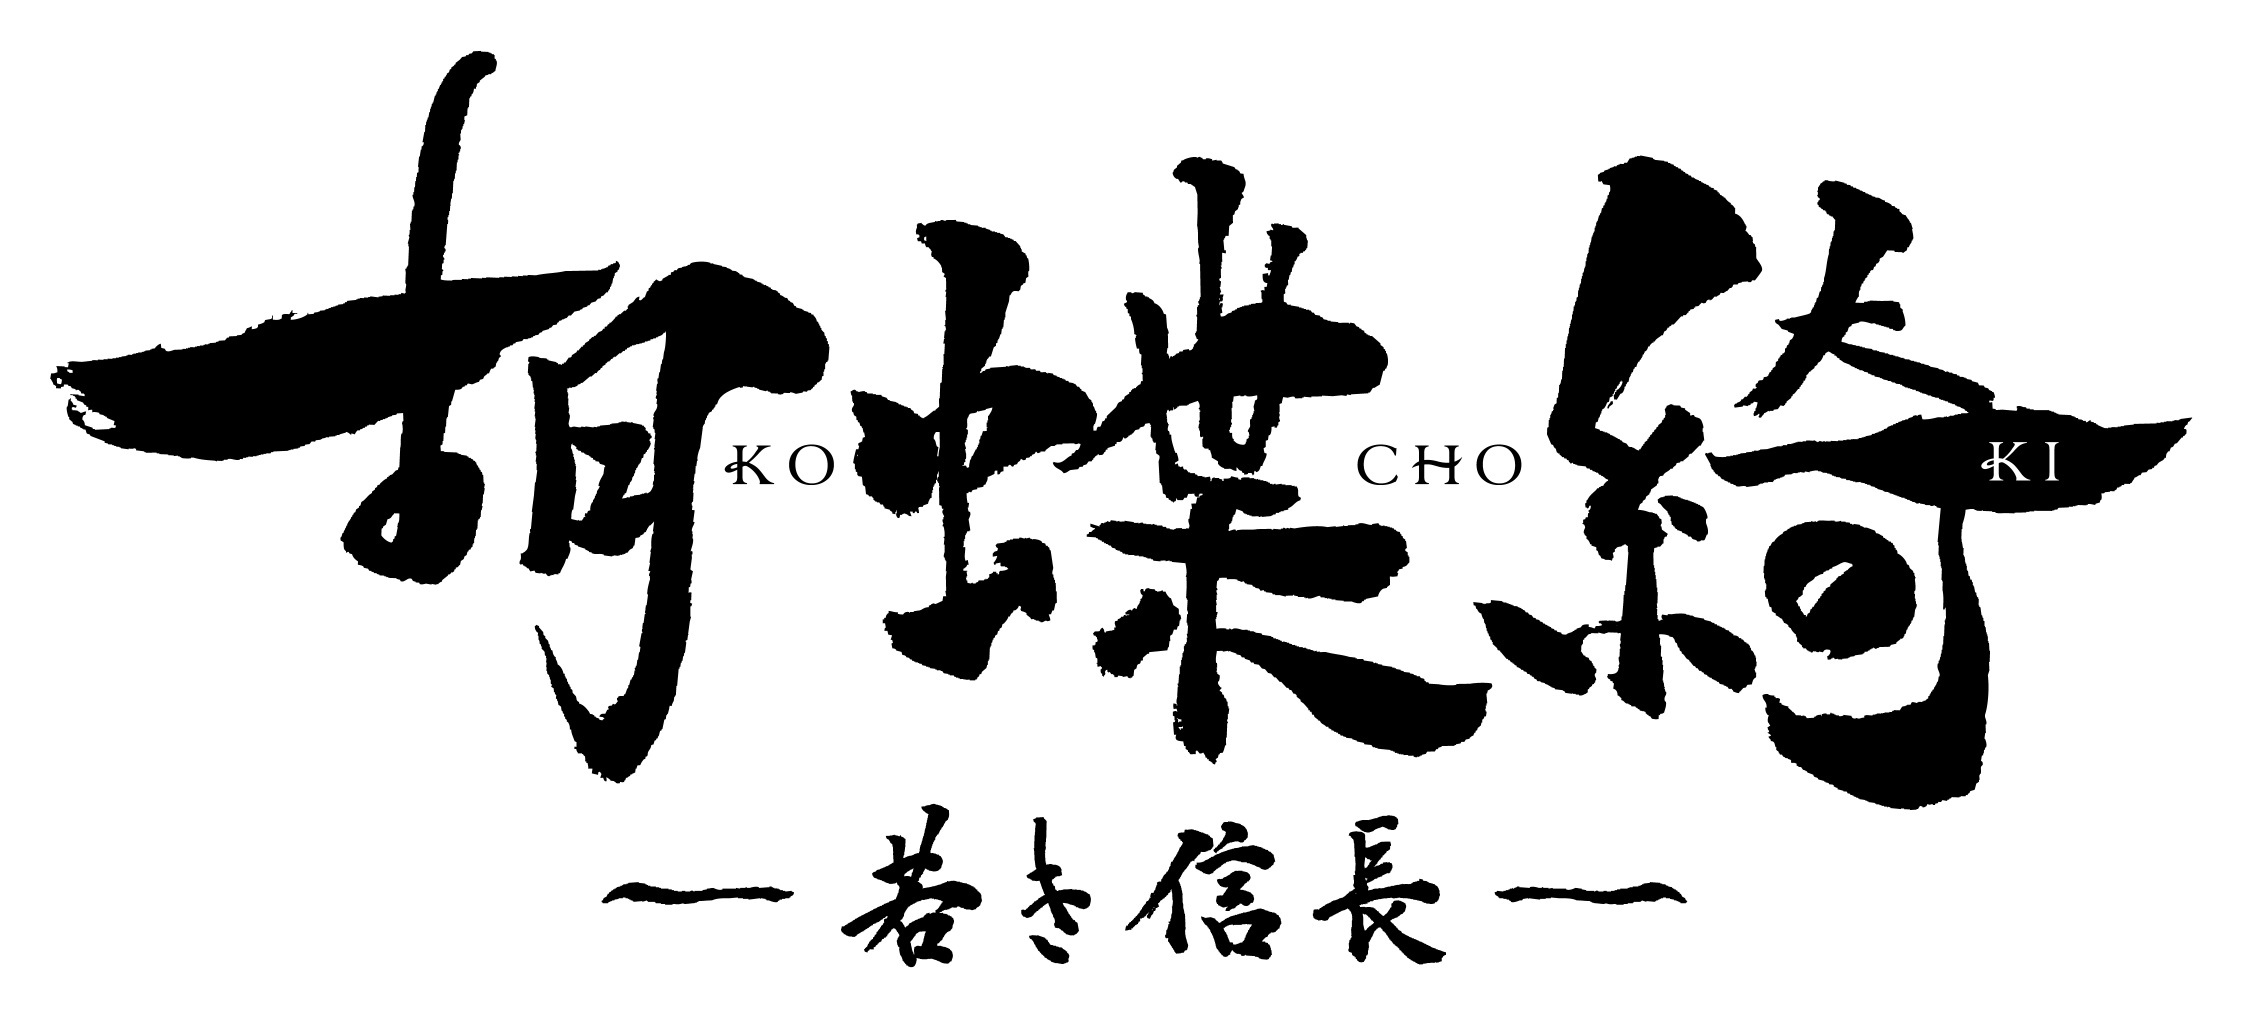 『胡蝶綺 ～若き信長～』ロゴ (C)揚羽母衣衆/胡蝶綺製作委員会